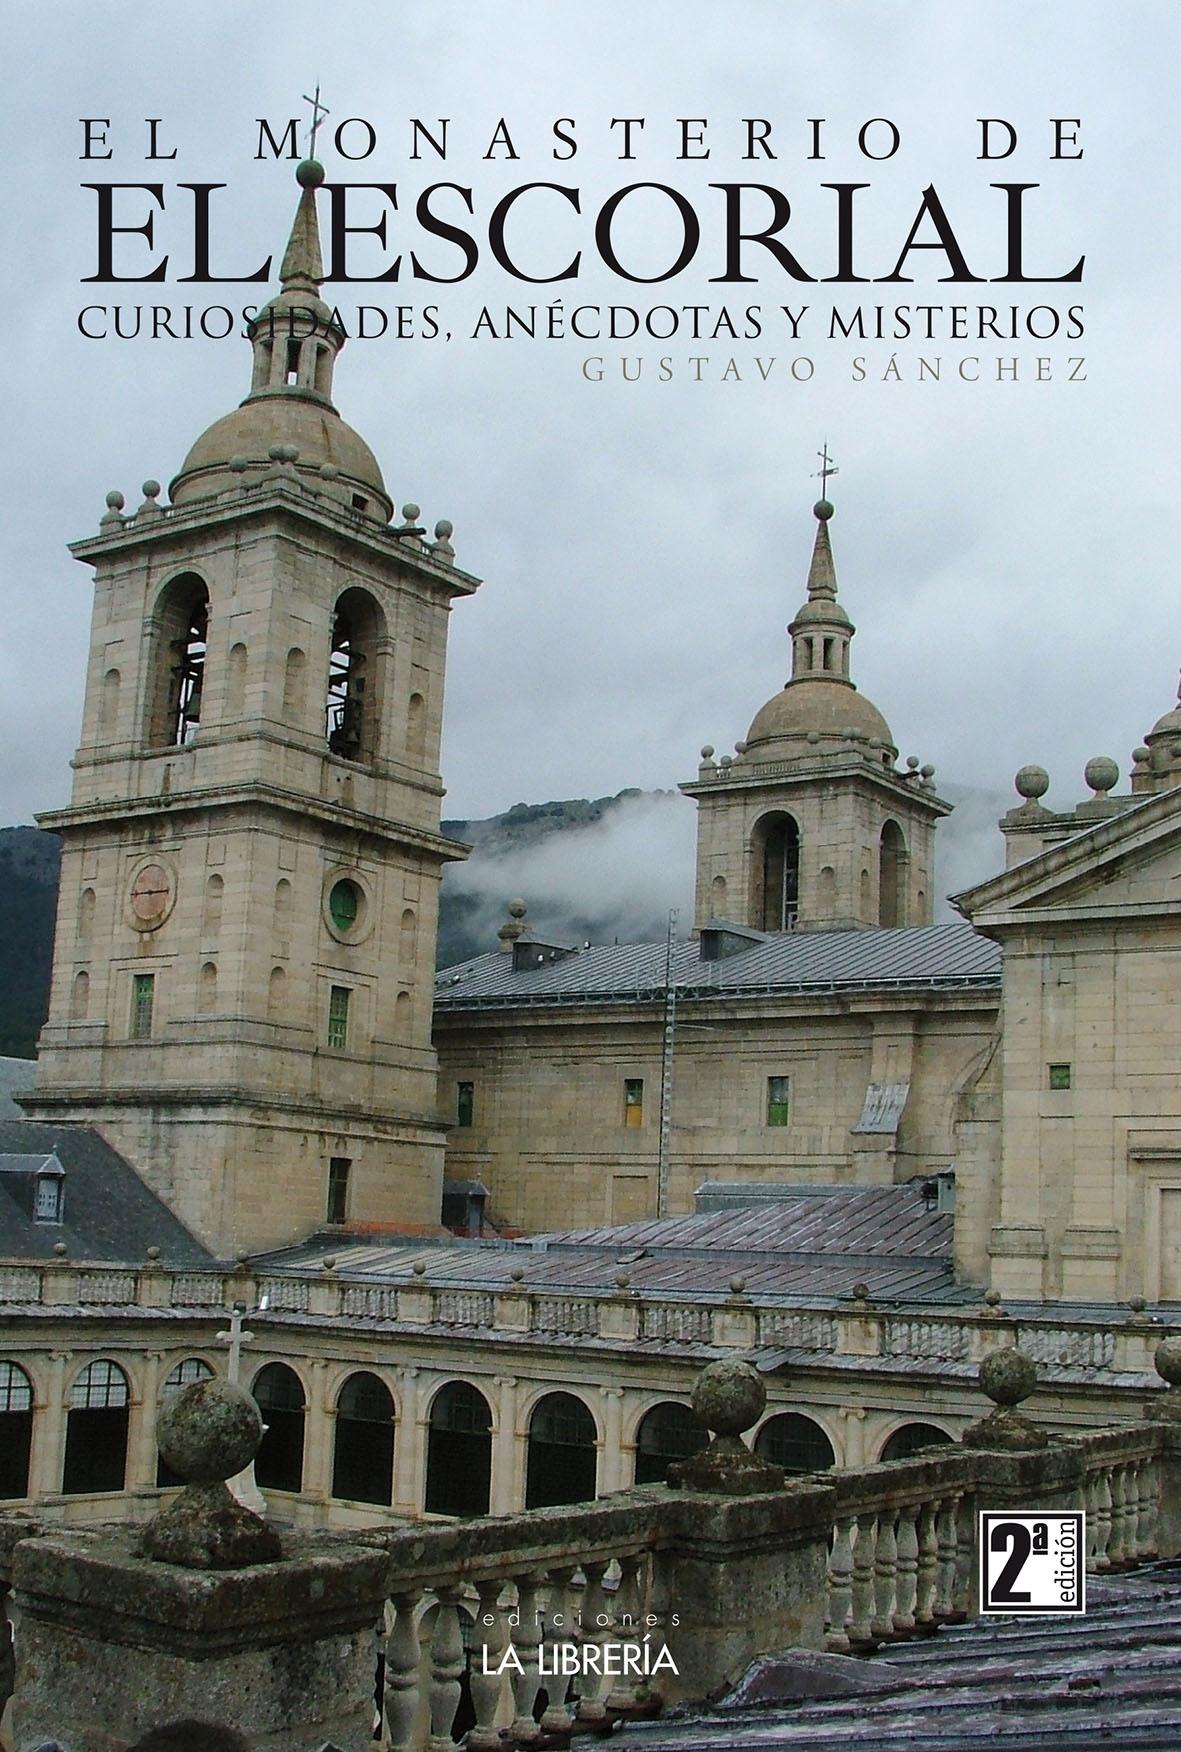 Monasterio de El Escorial, Curiosidades, Anécdotas y Misterios, El